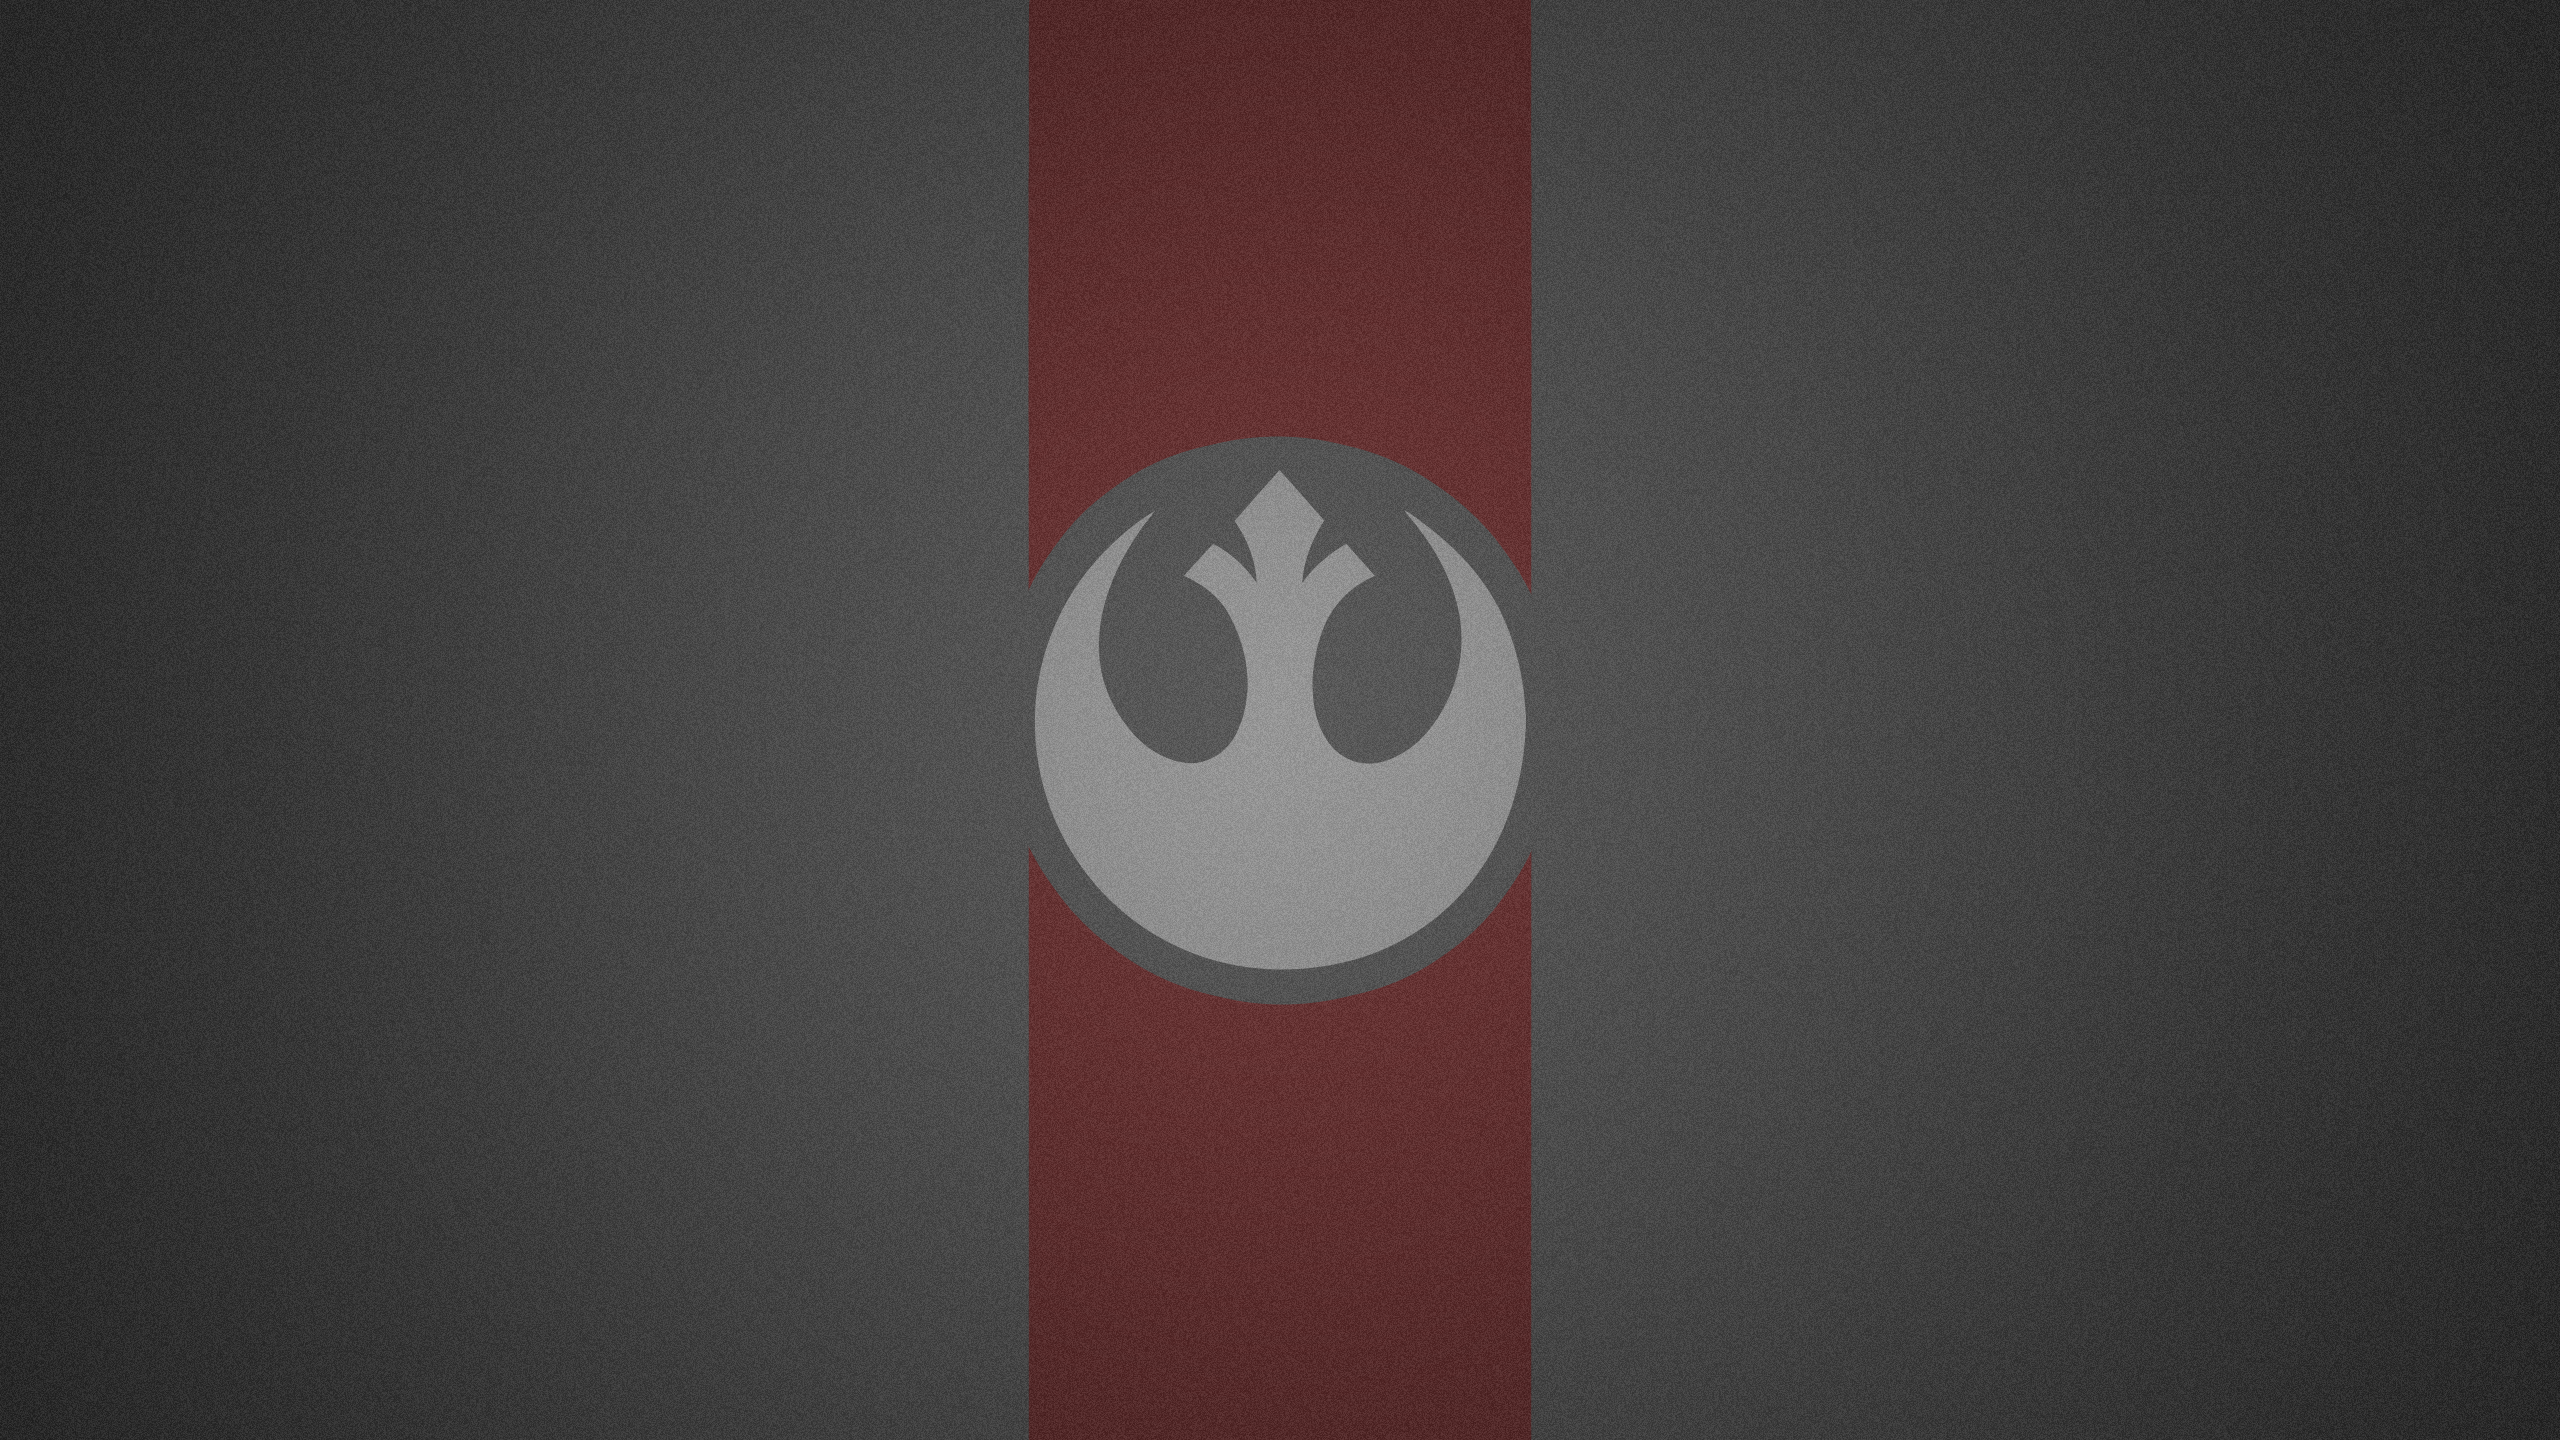 Star Wars Rebel Alliance Wallpaper by HD Wallpaper Daily